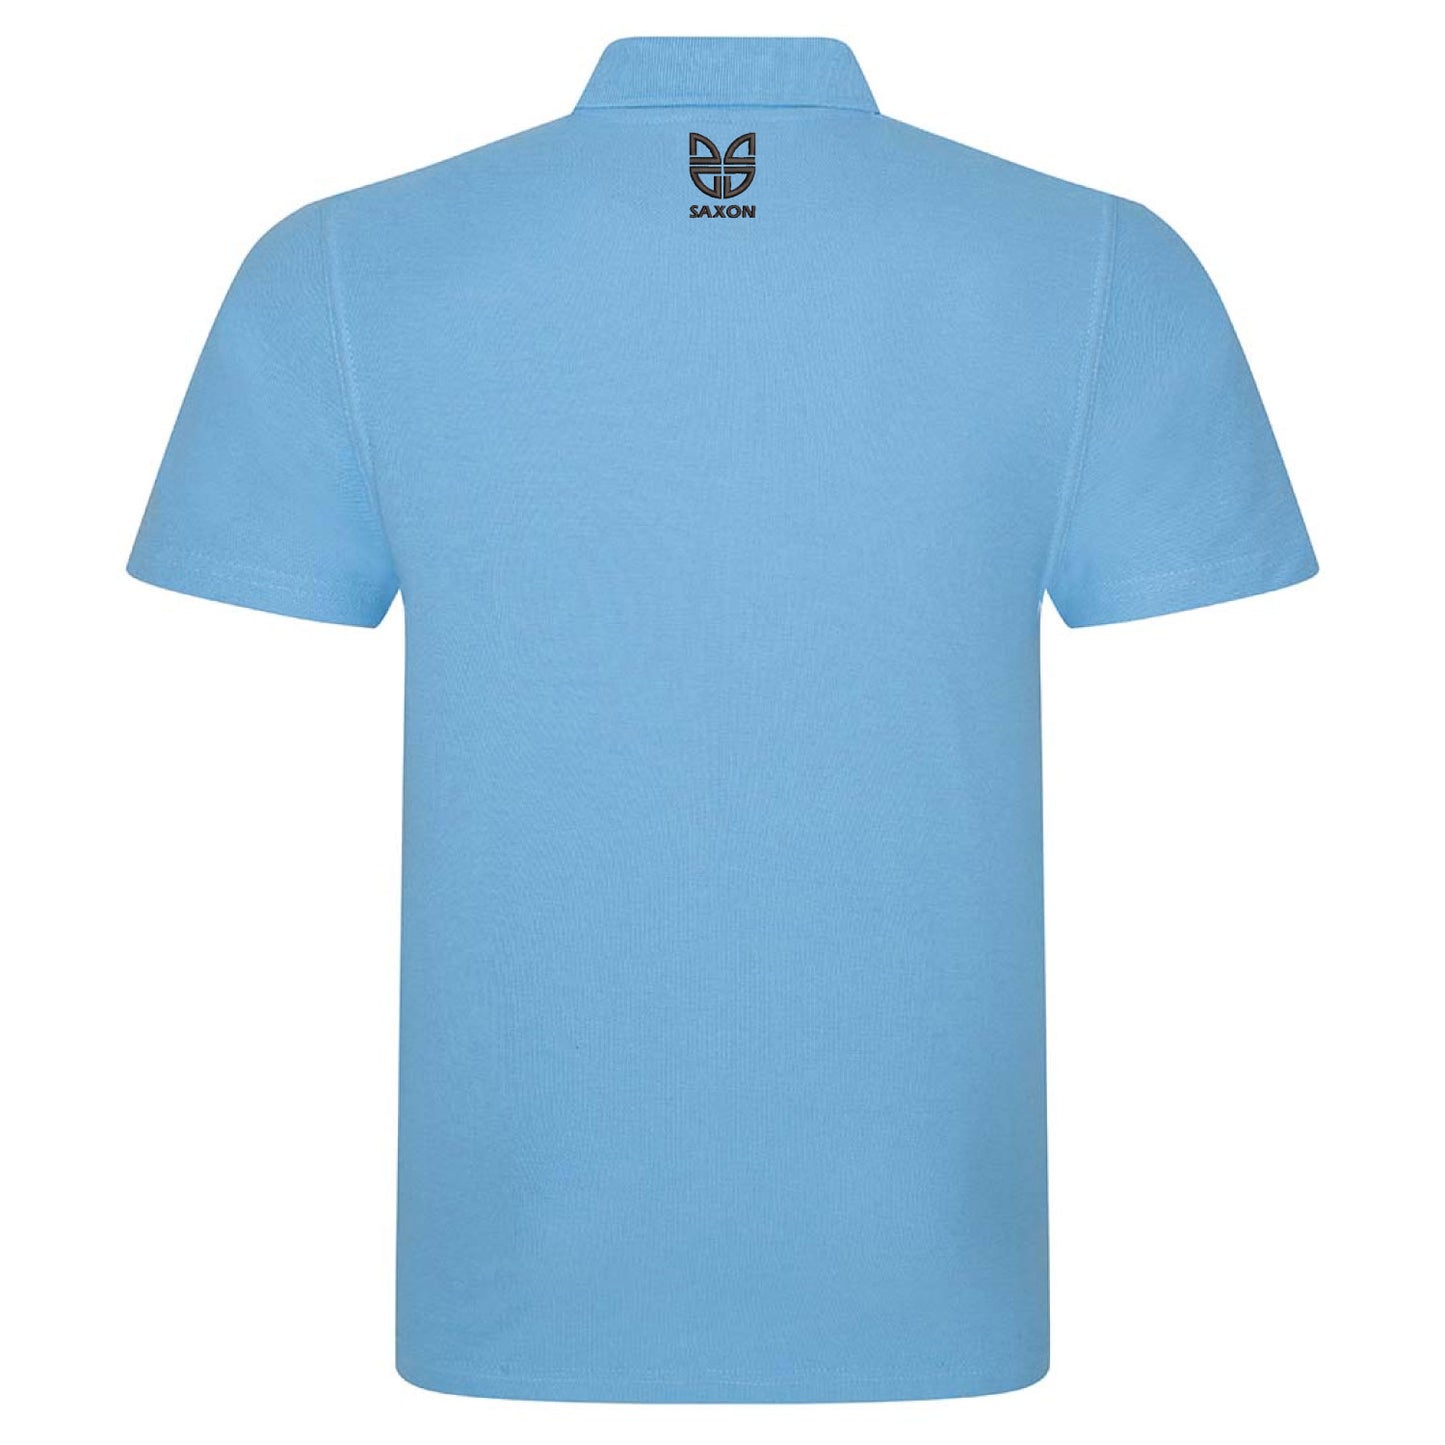 Malvern Town Football Club Polo Shirt